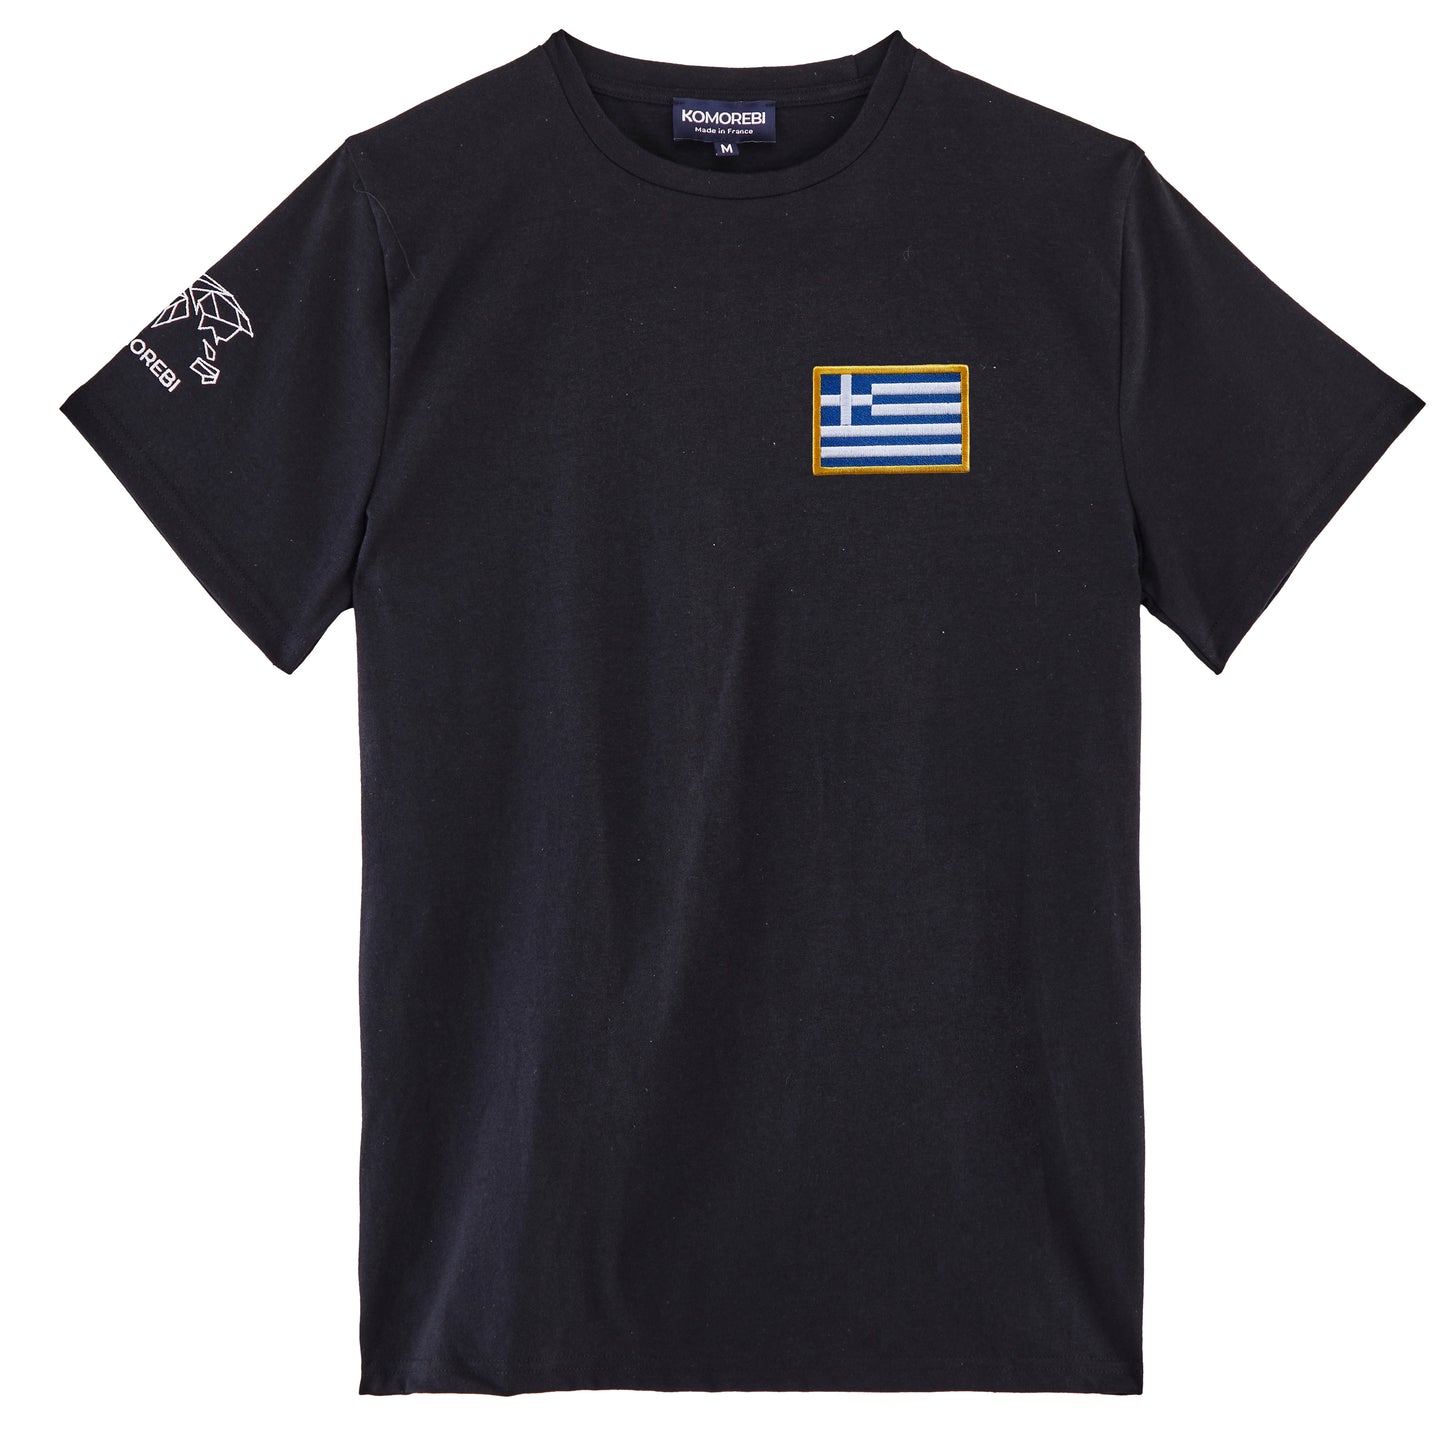 Greece • T-shirt